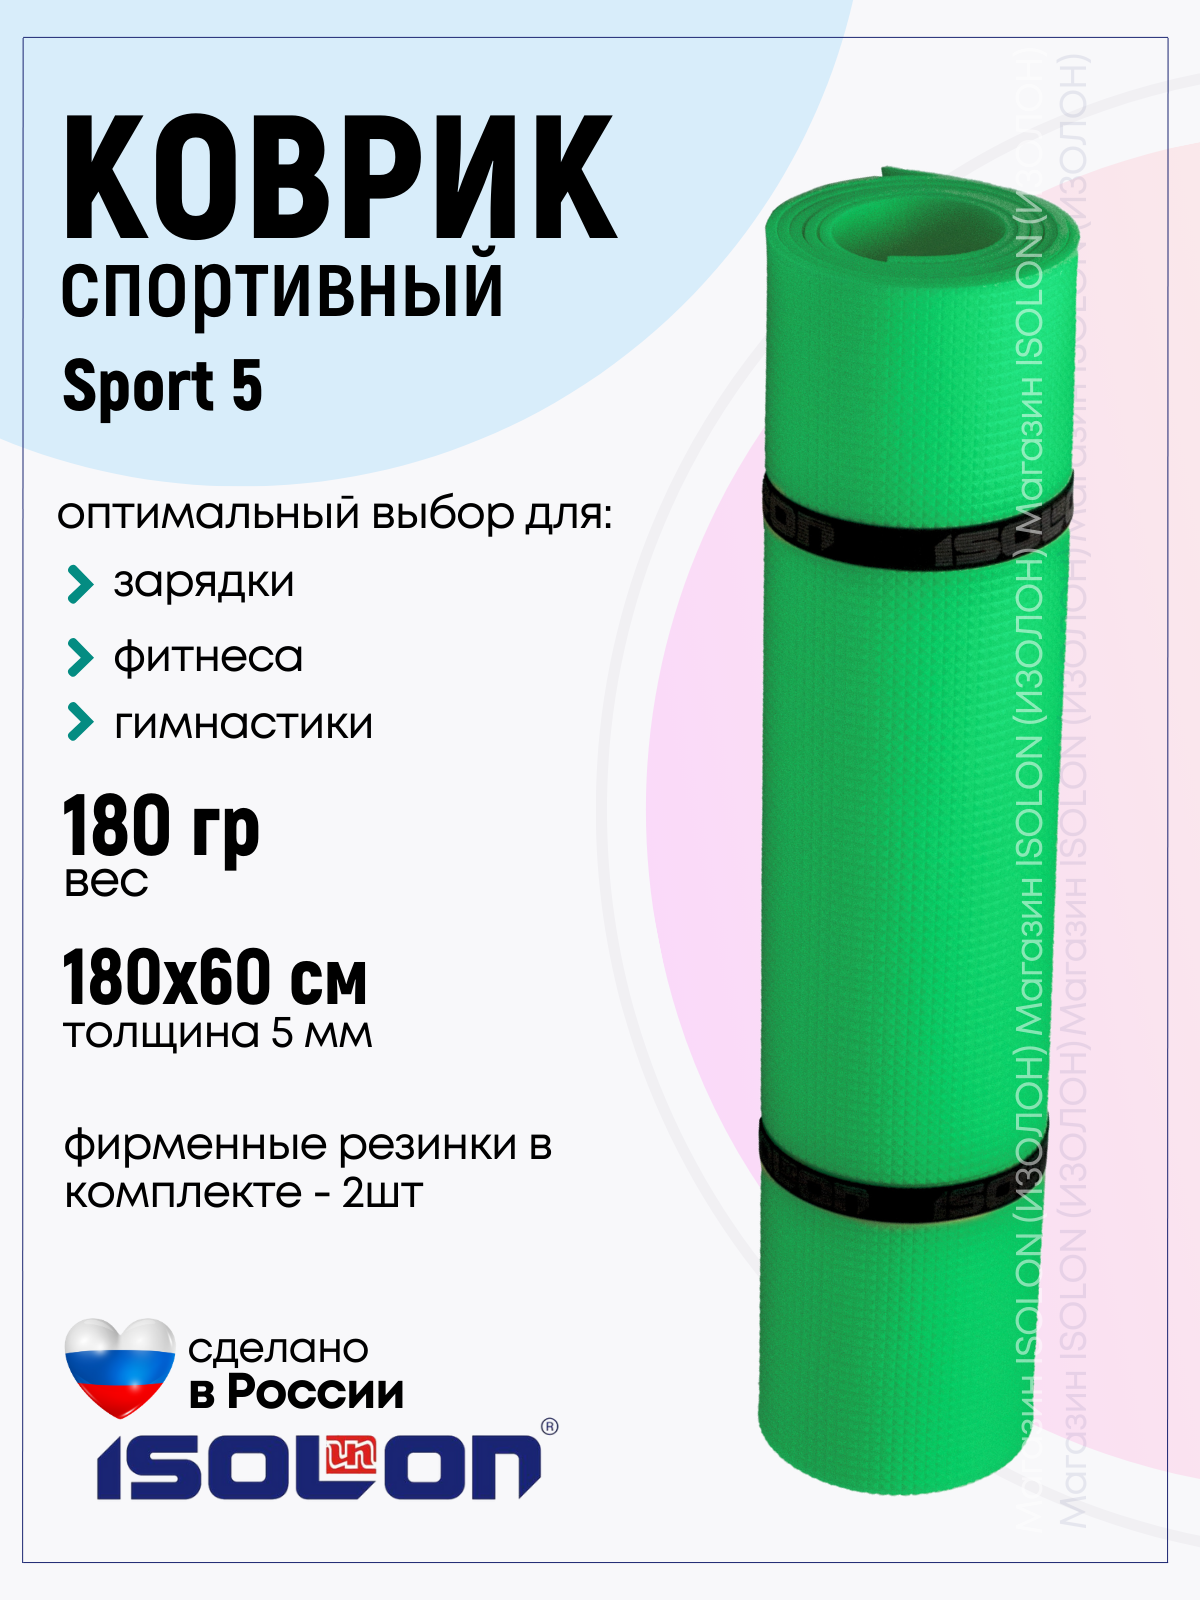 Коврик спортивный для зарядки и фитнеса Isolon Sport 5 180х60 см